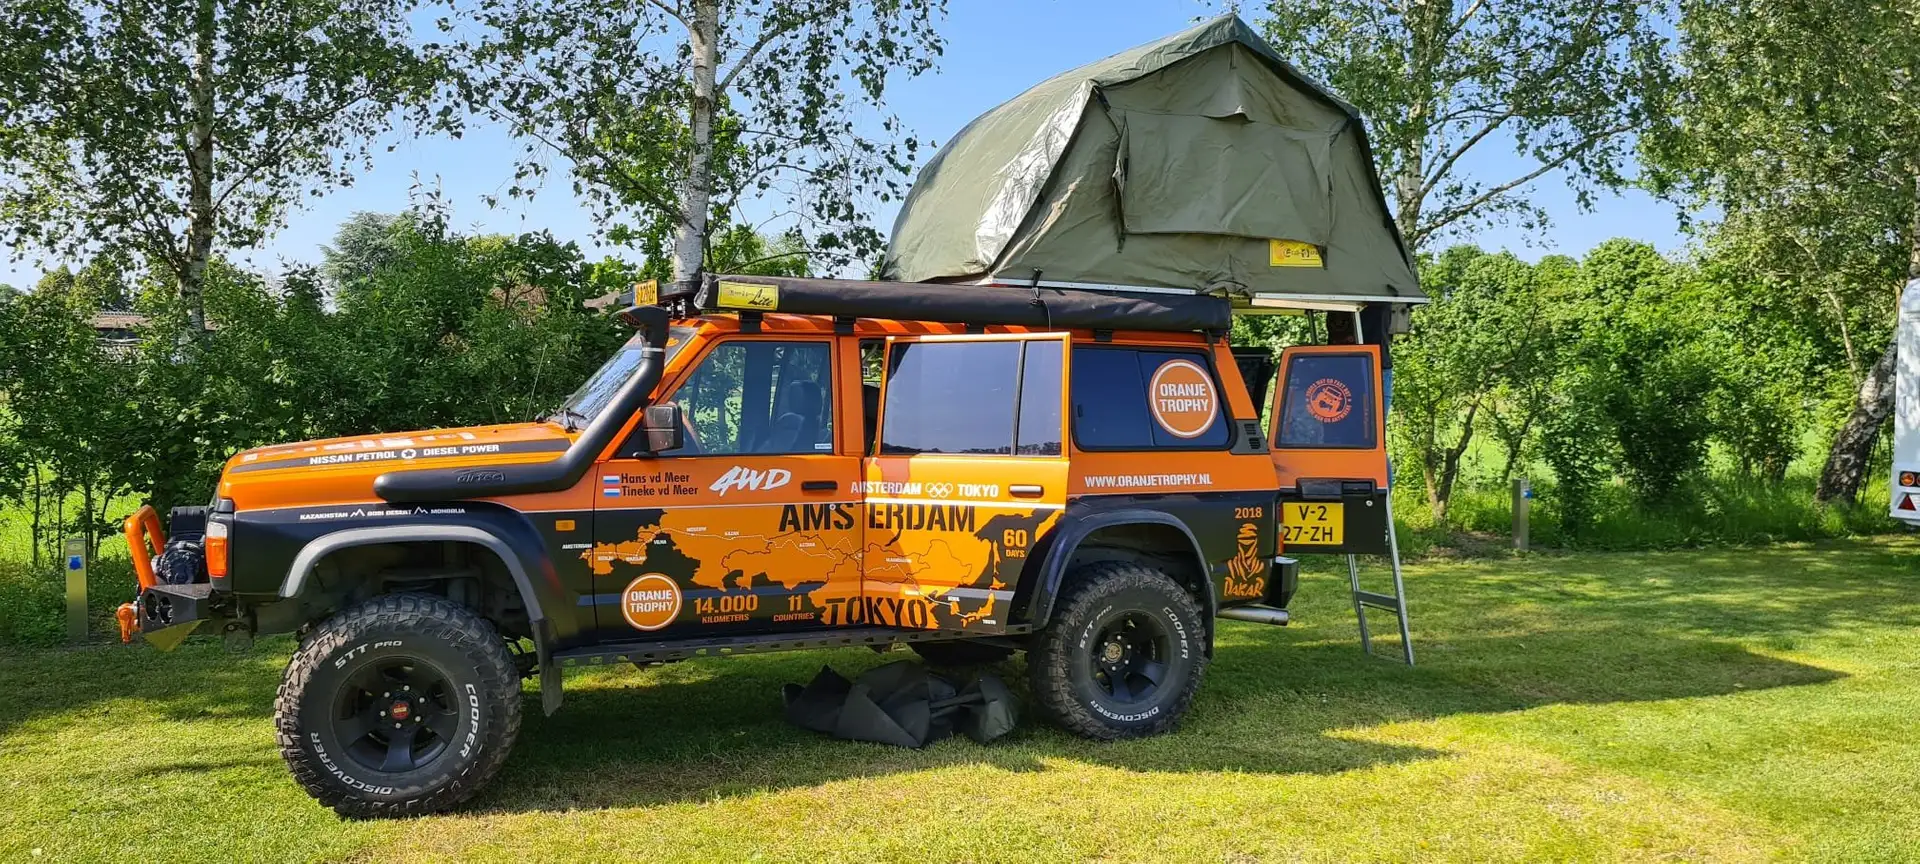 Nissan Patrol 4x4 off-road camper Naranja - 2